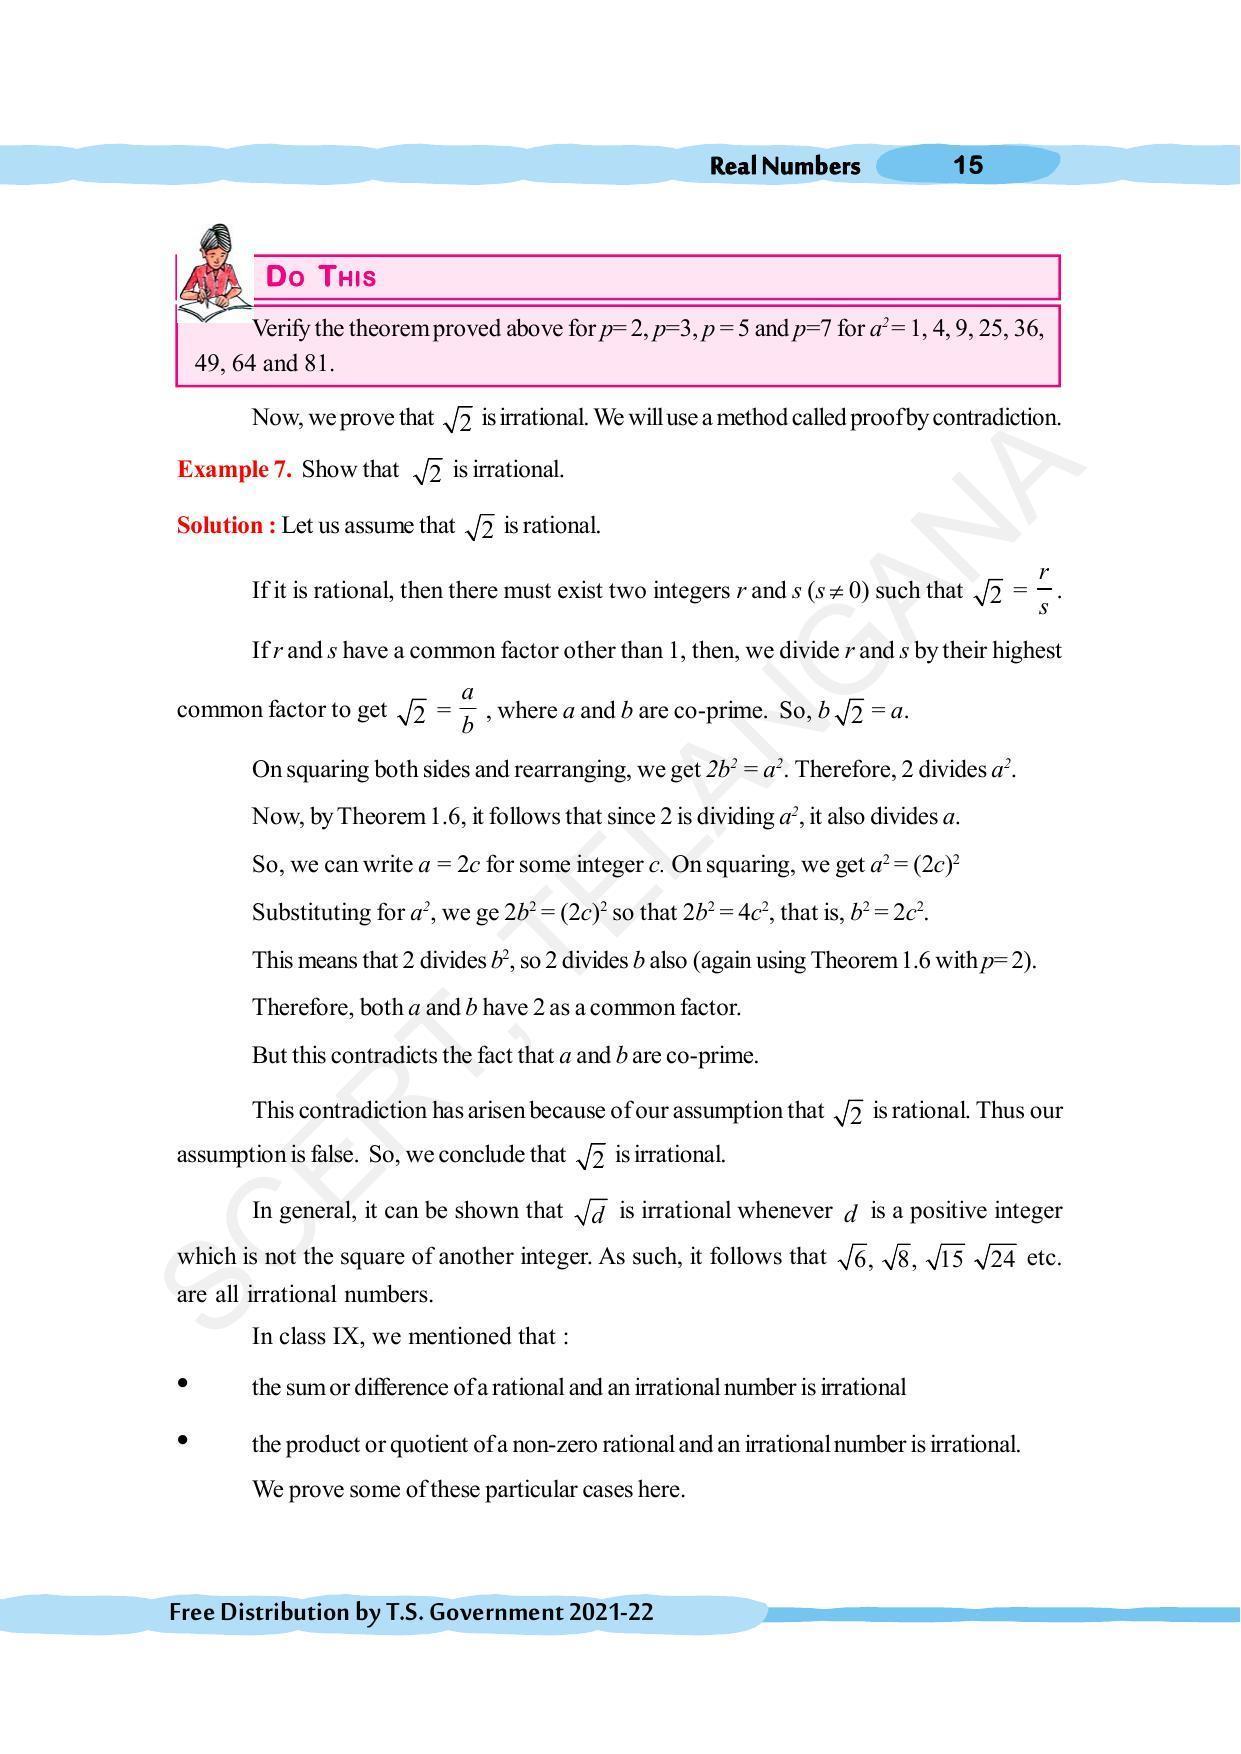 TS SCERT Class 10 Maths (English Medium) Text Book - Page 25